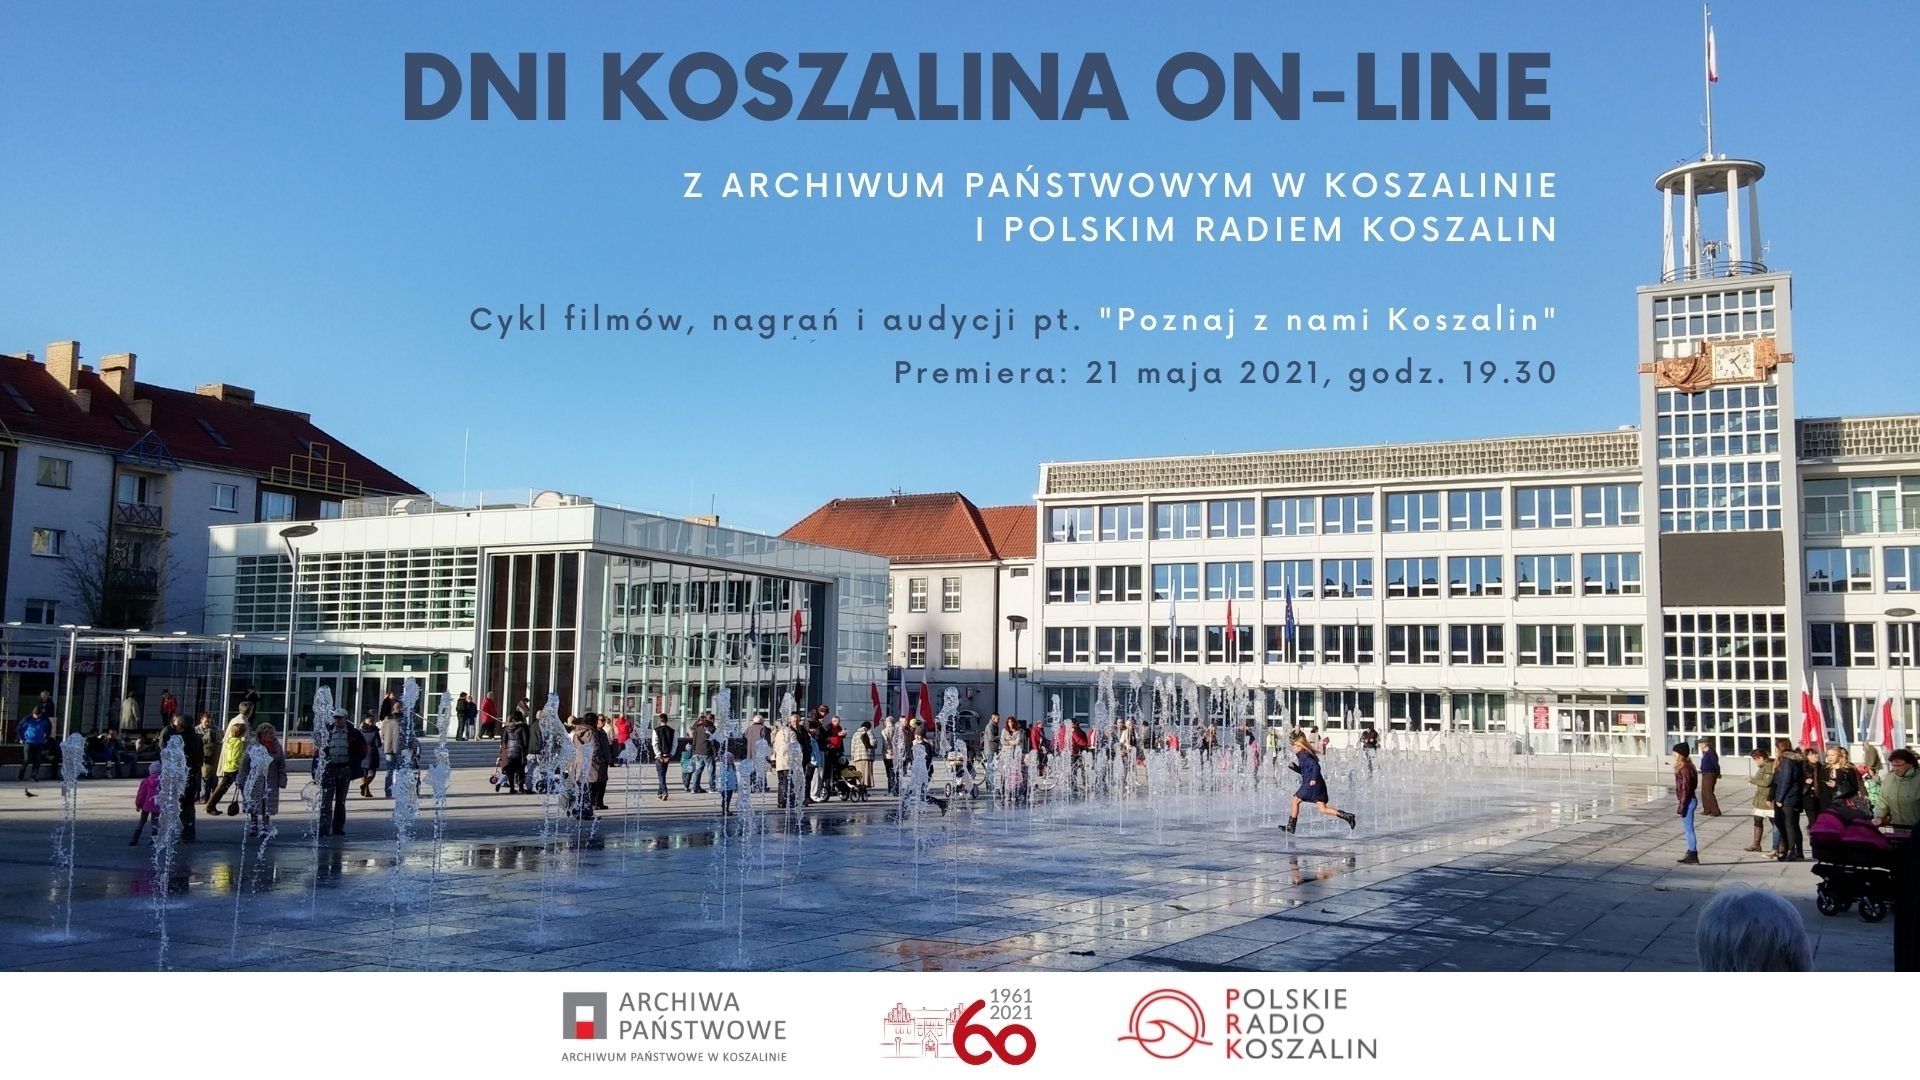 Plakat ze zdjęciem budynku i fontanny i napisem Dnia Koszalina on-line 